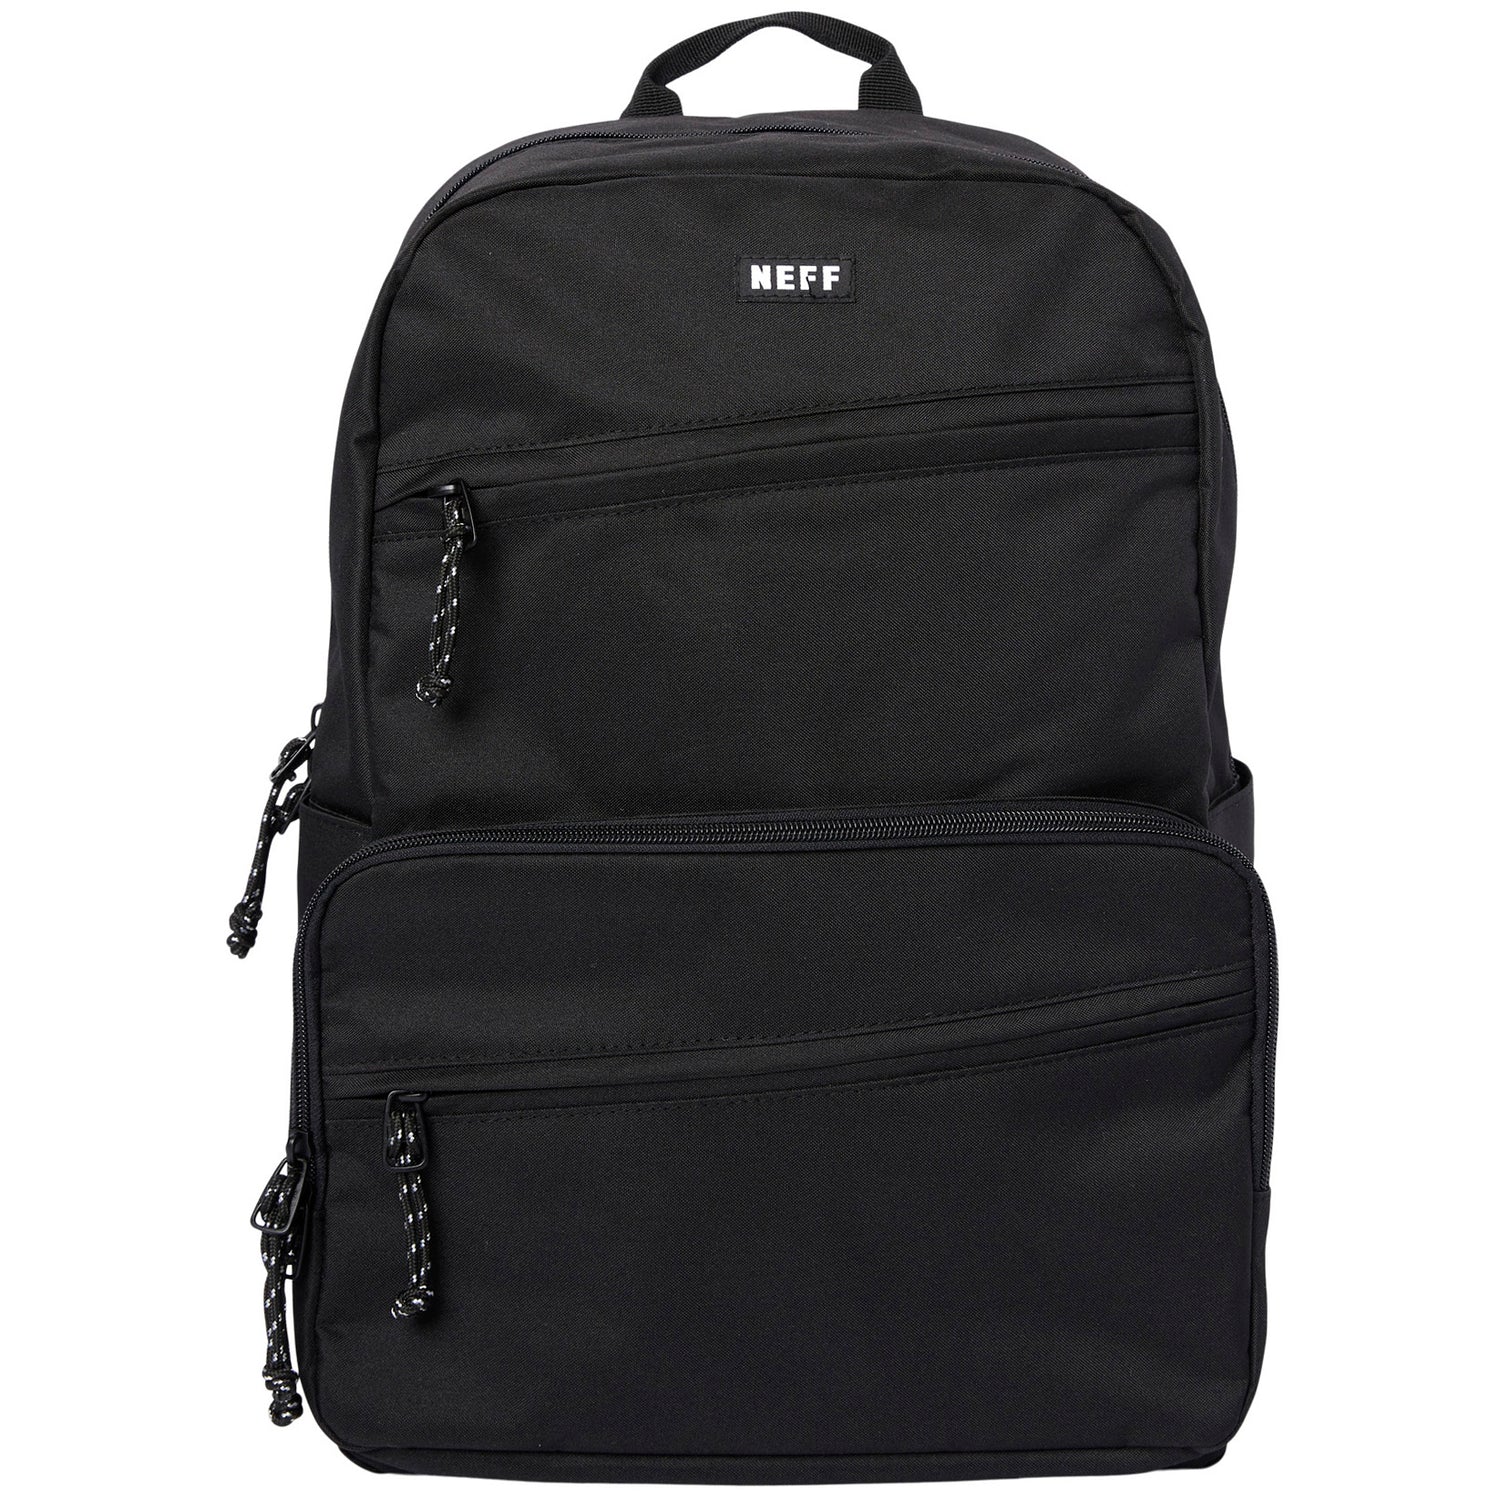 Fortnite Backpack - Black/Green, One Size